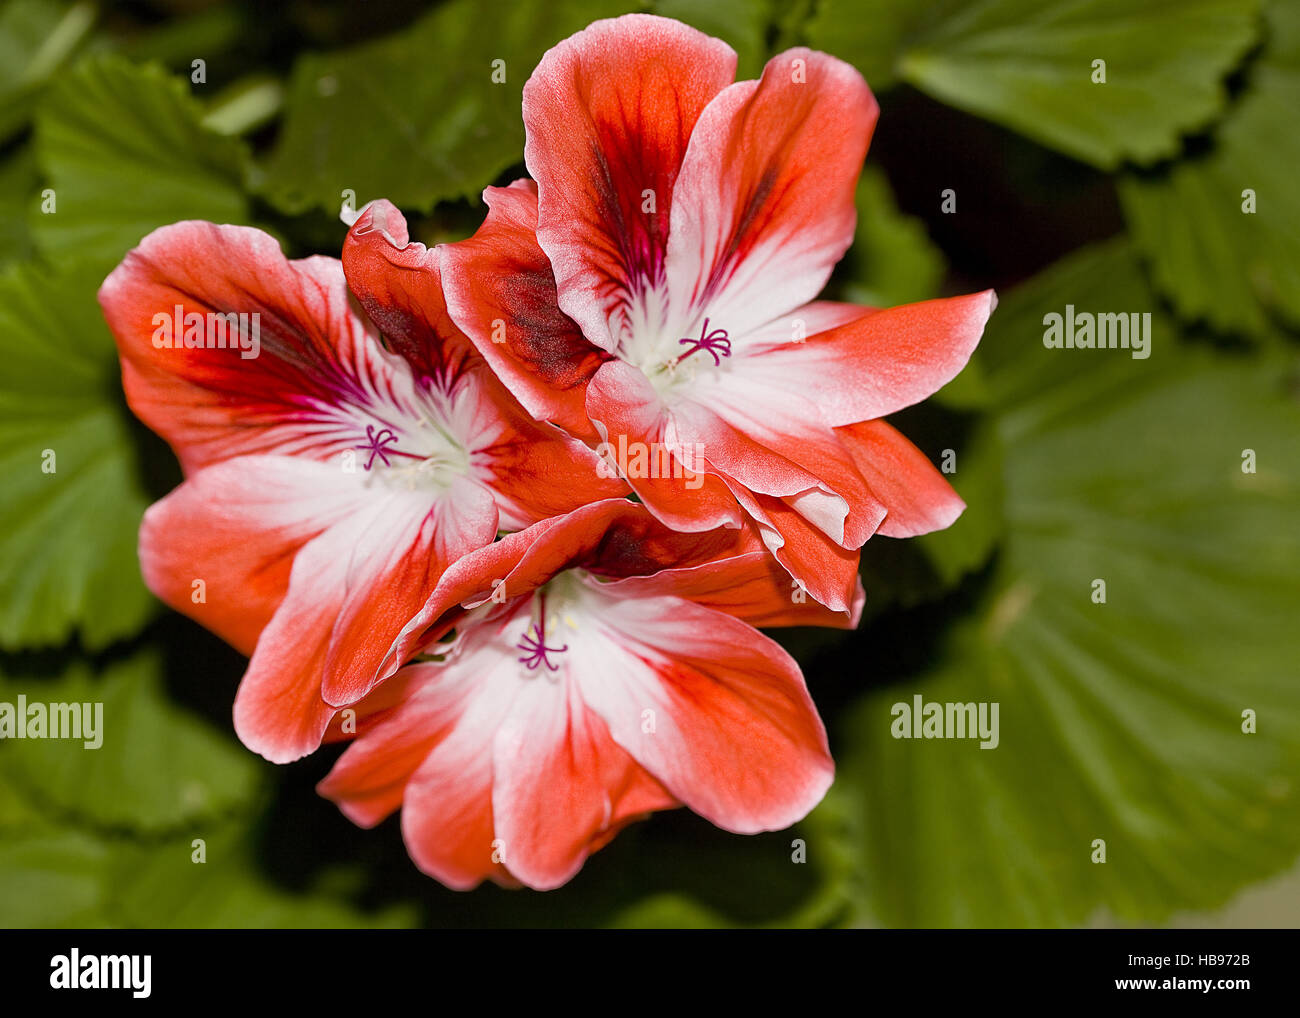 Geranium Pelargonium spec. Stock Photo